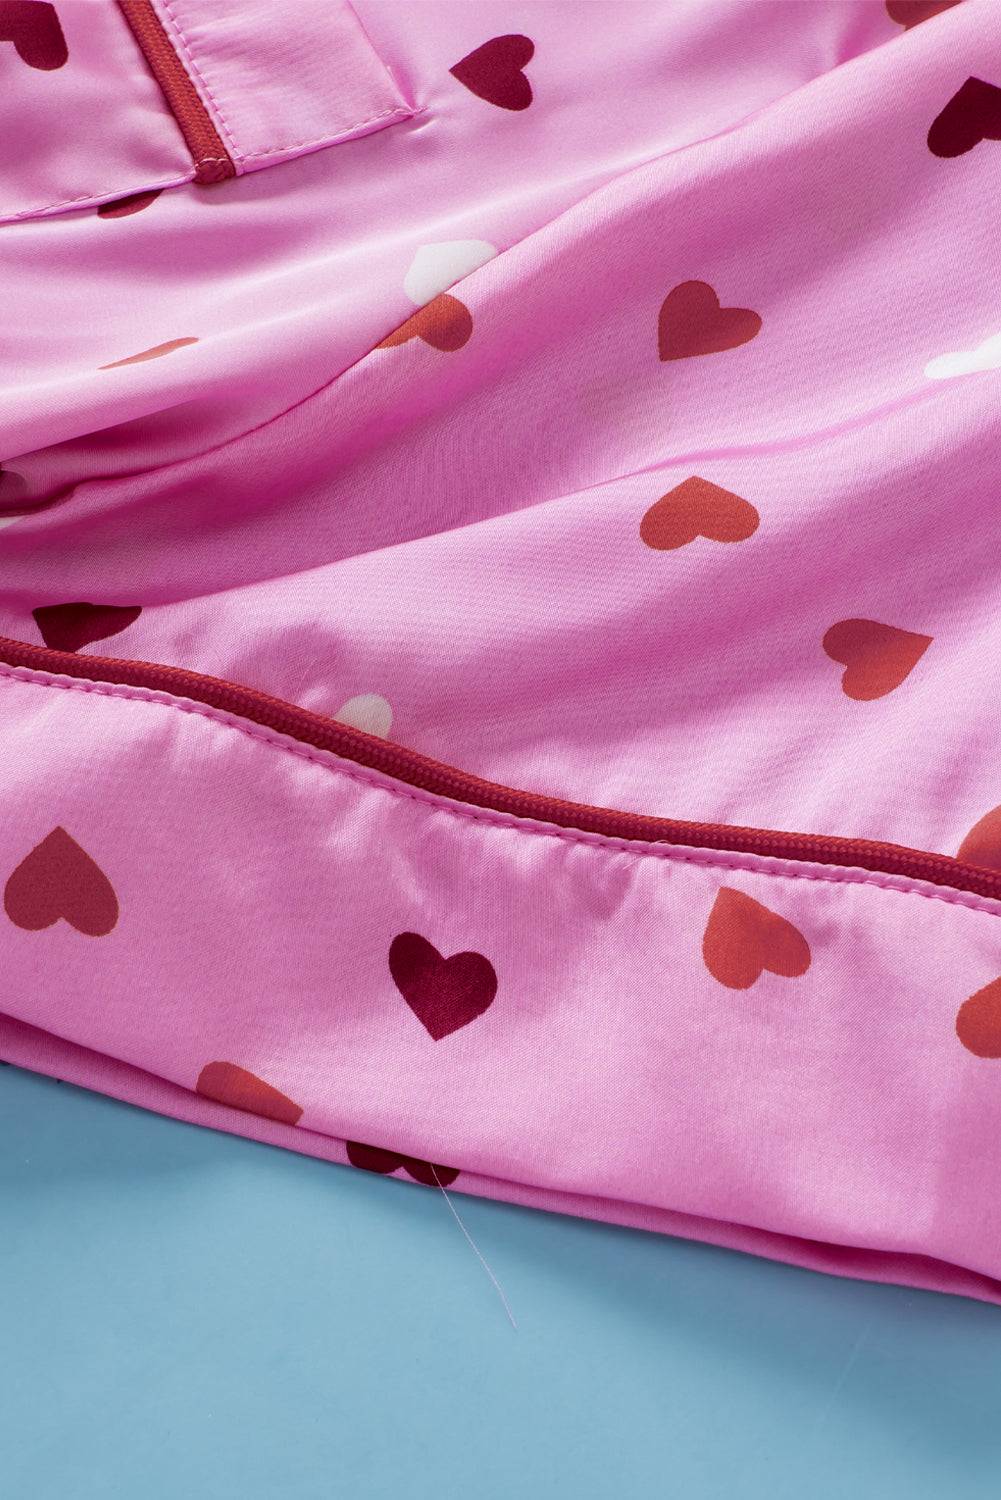 Rožnata spalna oblačila za velike velikosti s potiskom v obliki srca za Valentinovo